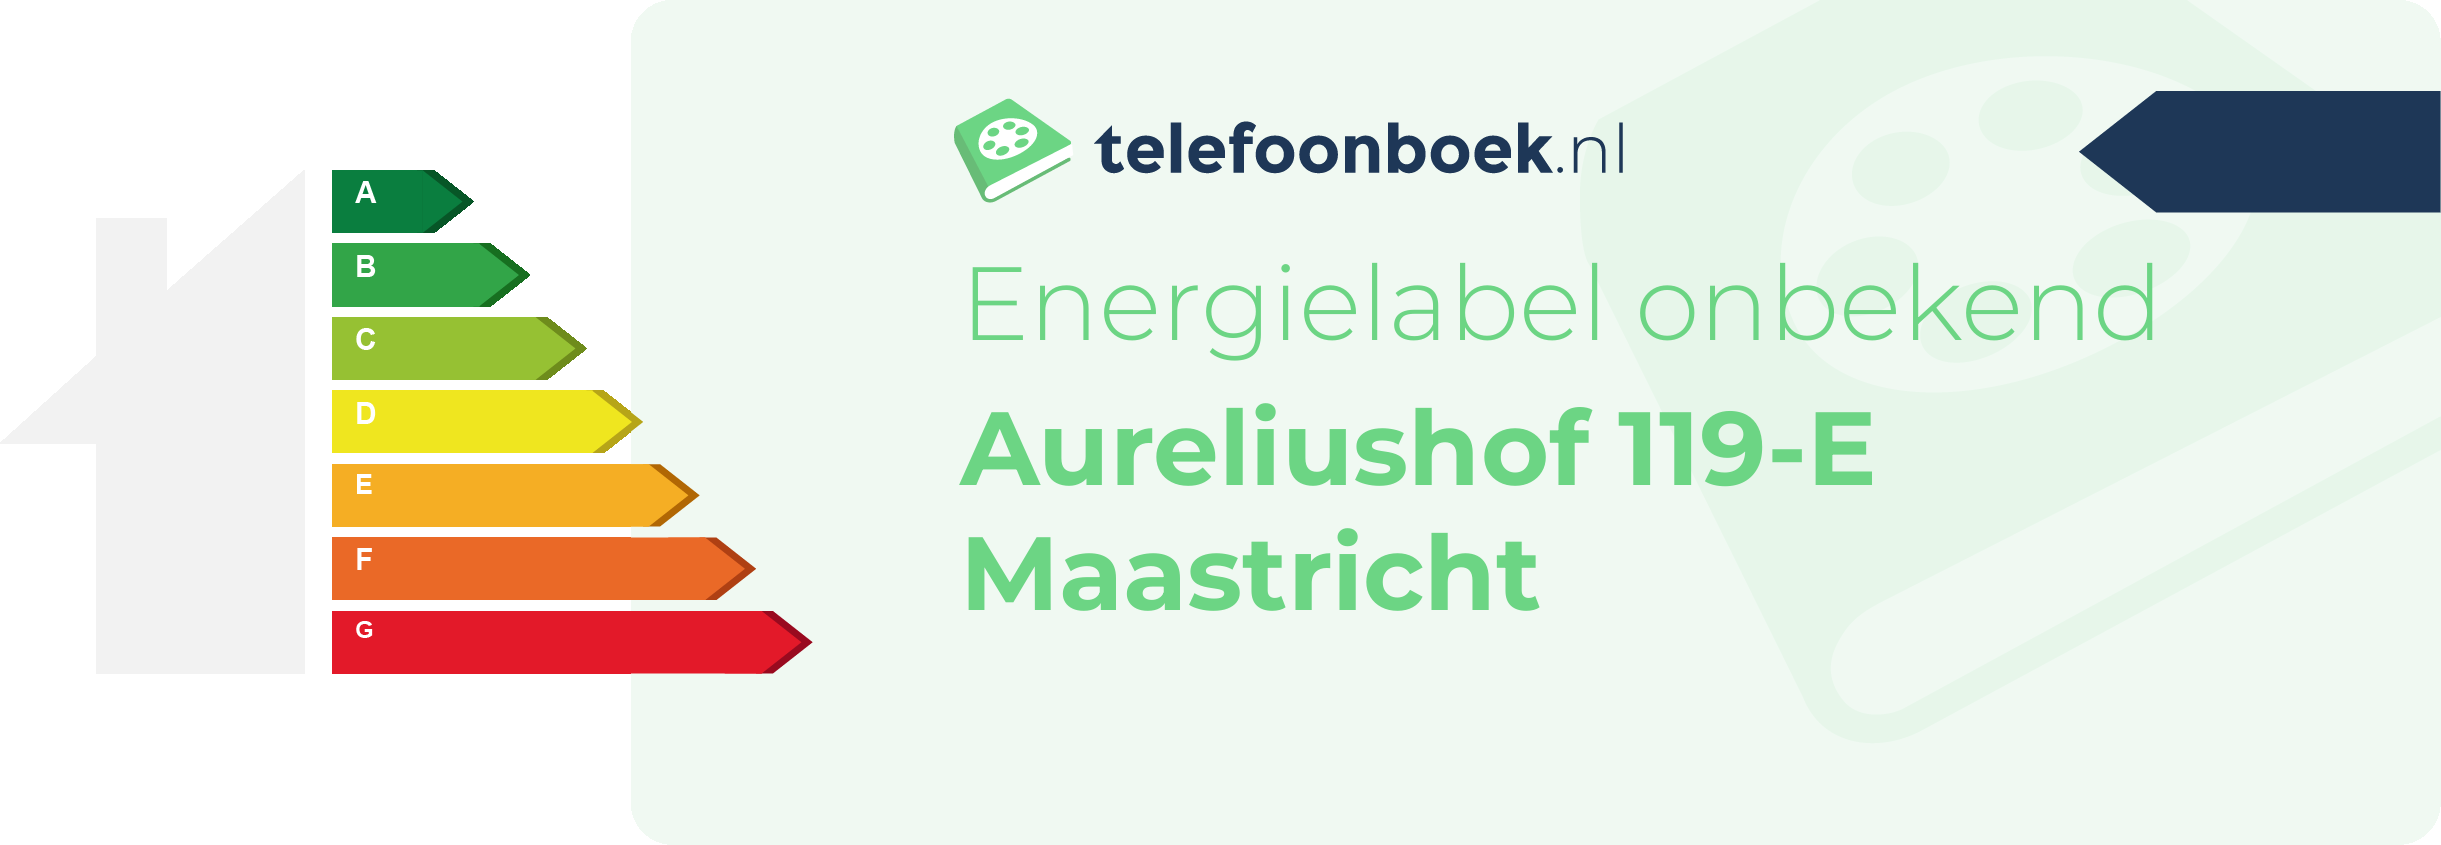 Energielabel Aureliushof 119-E Maastricht